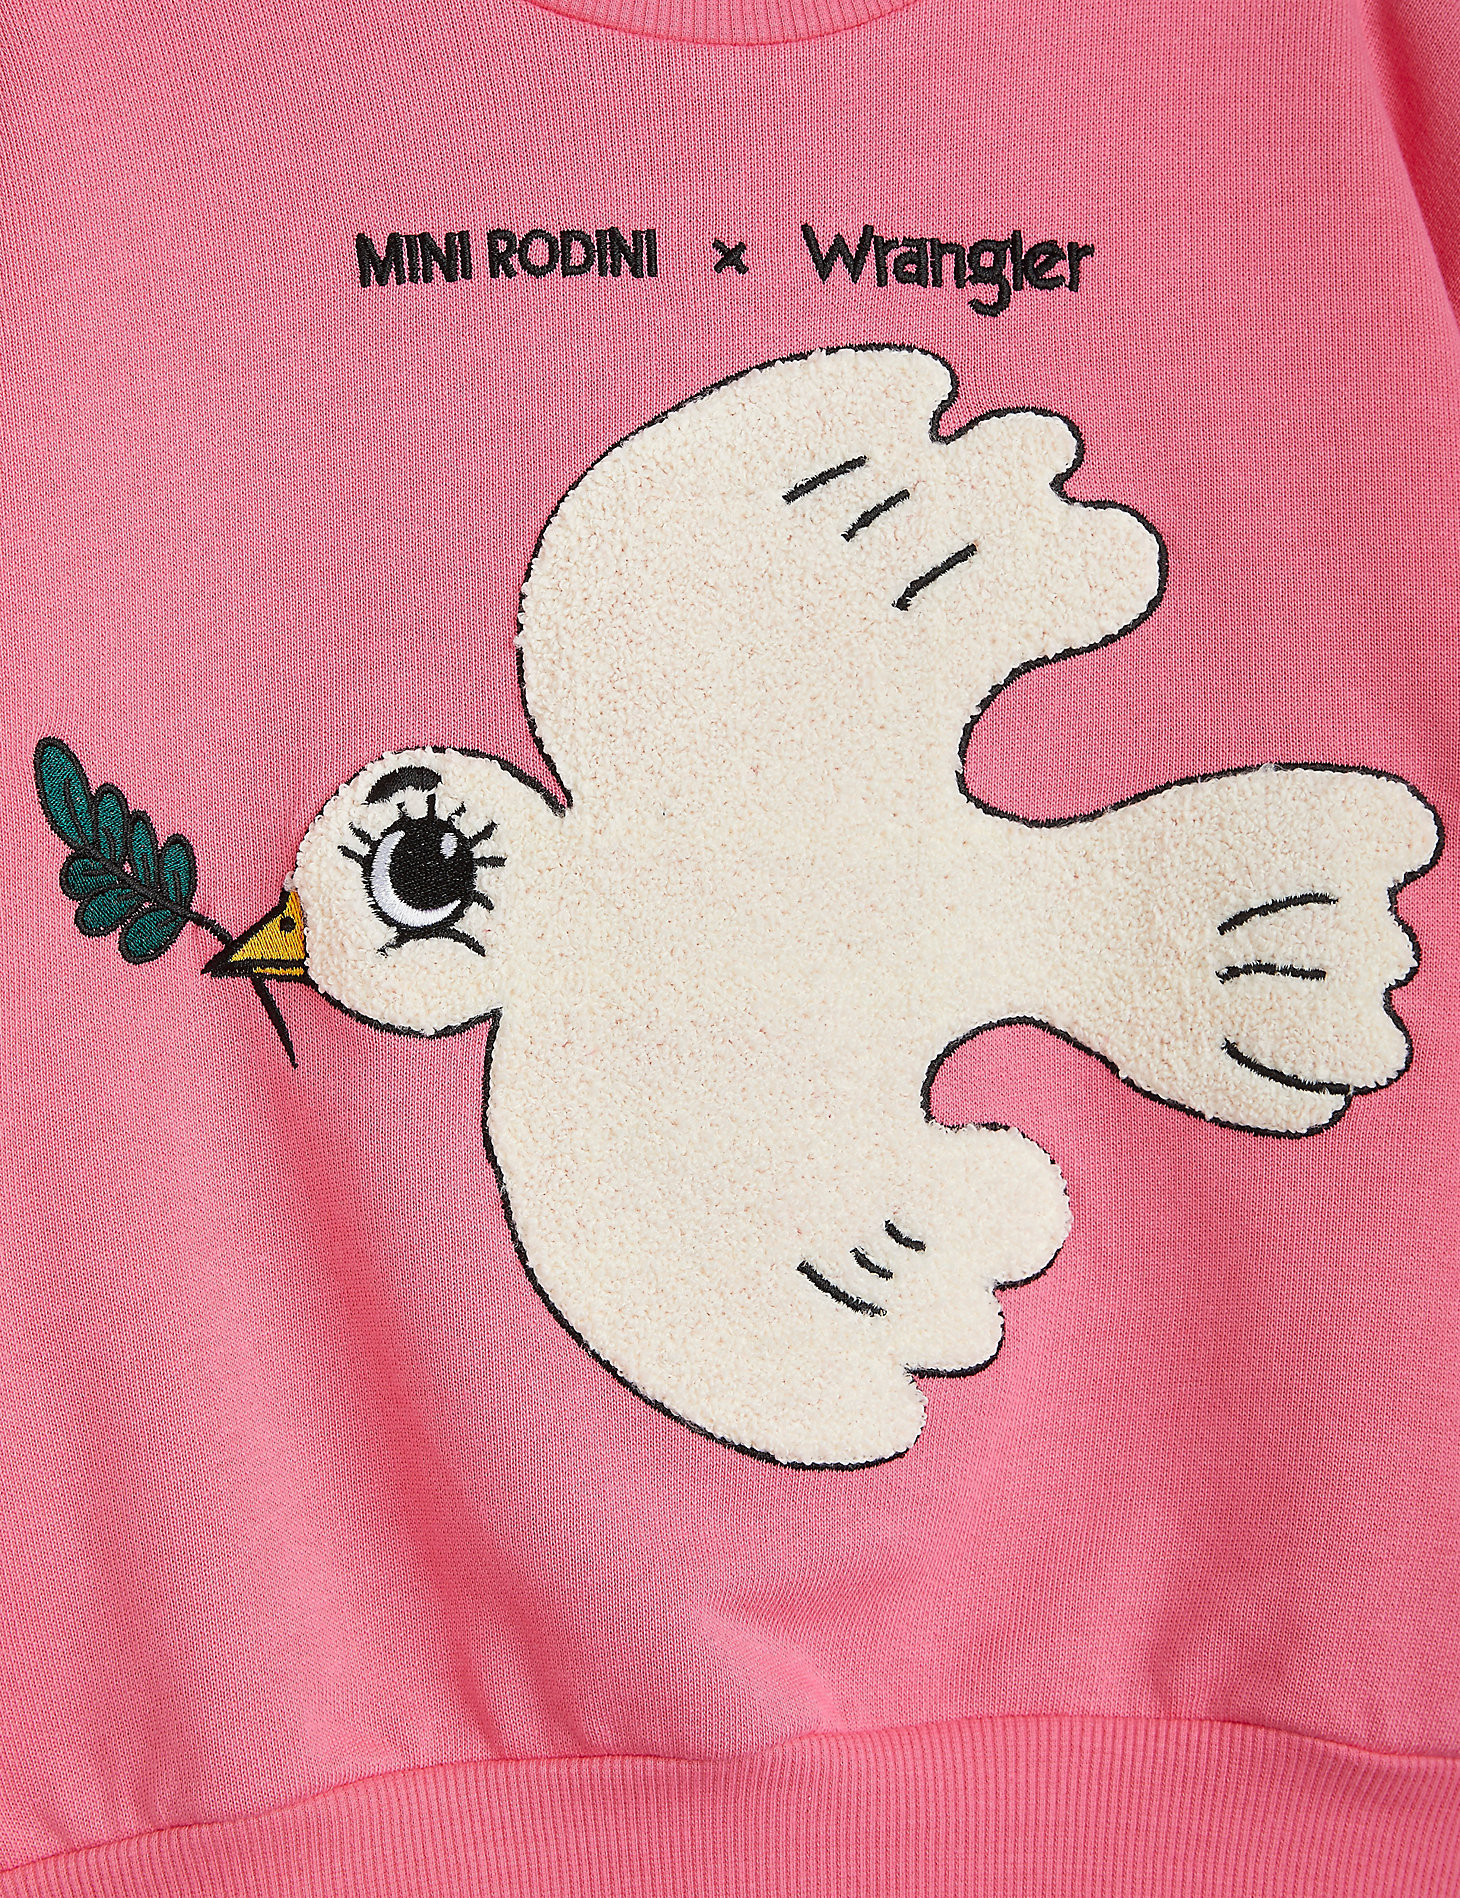 Mini Rodini x Wrangler Peace Dove Chenille Sweatshirt in Pink alternative view 3